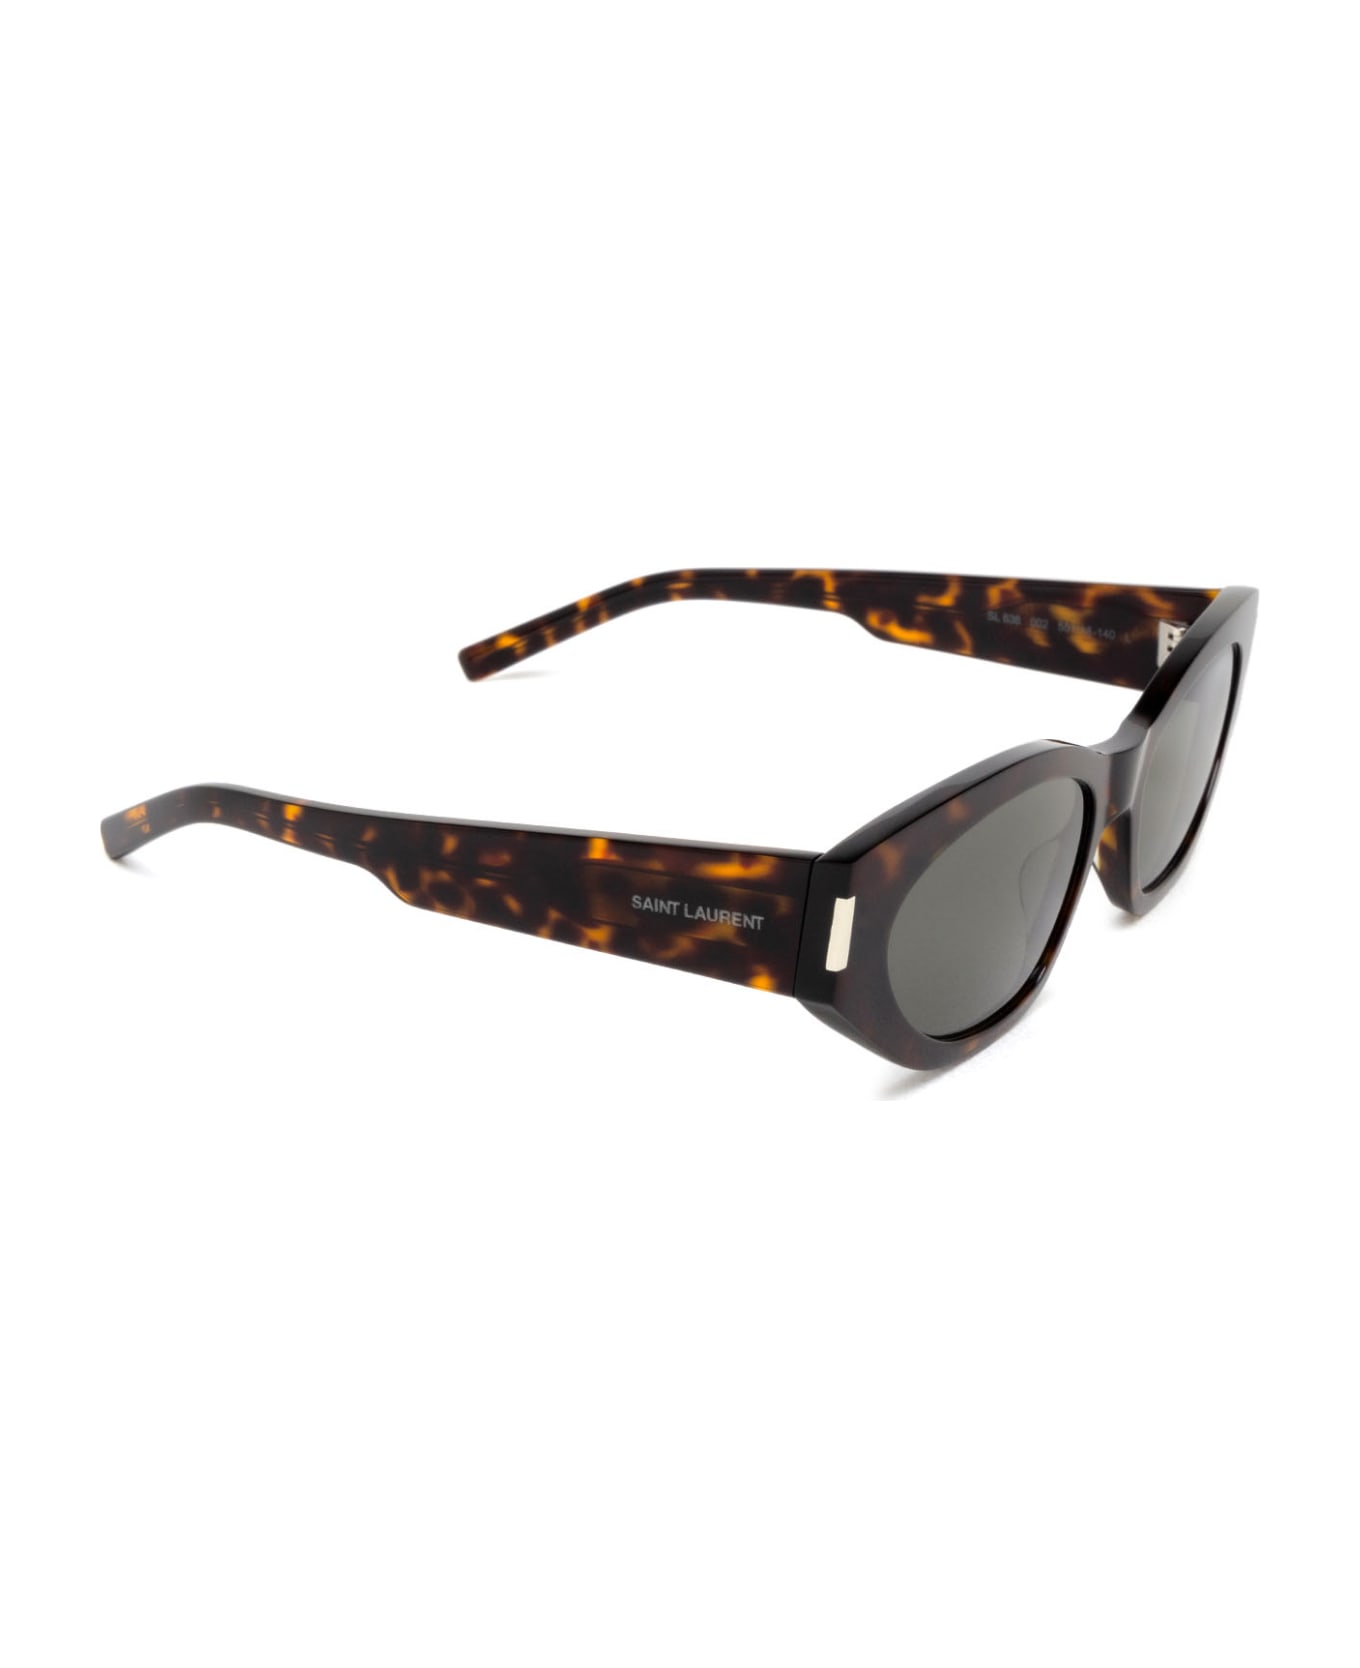 Saint Laurent Eyewear Sl 638 Havana Sunglasses - Havana